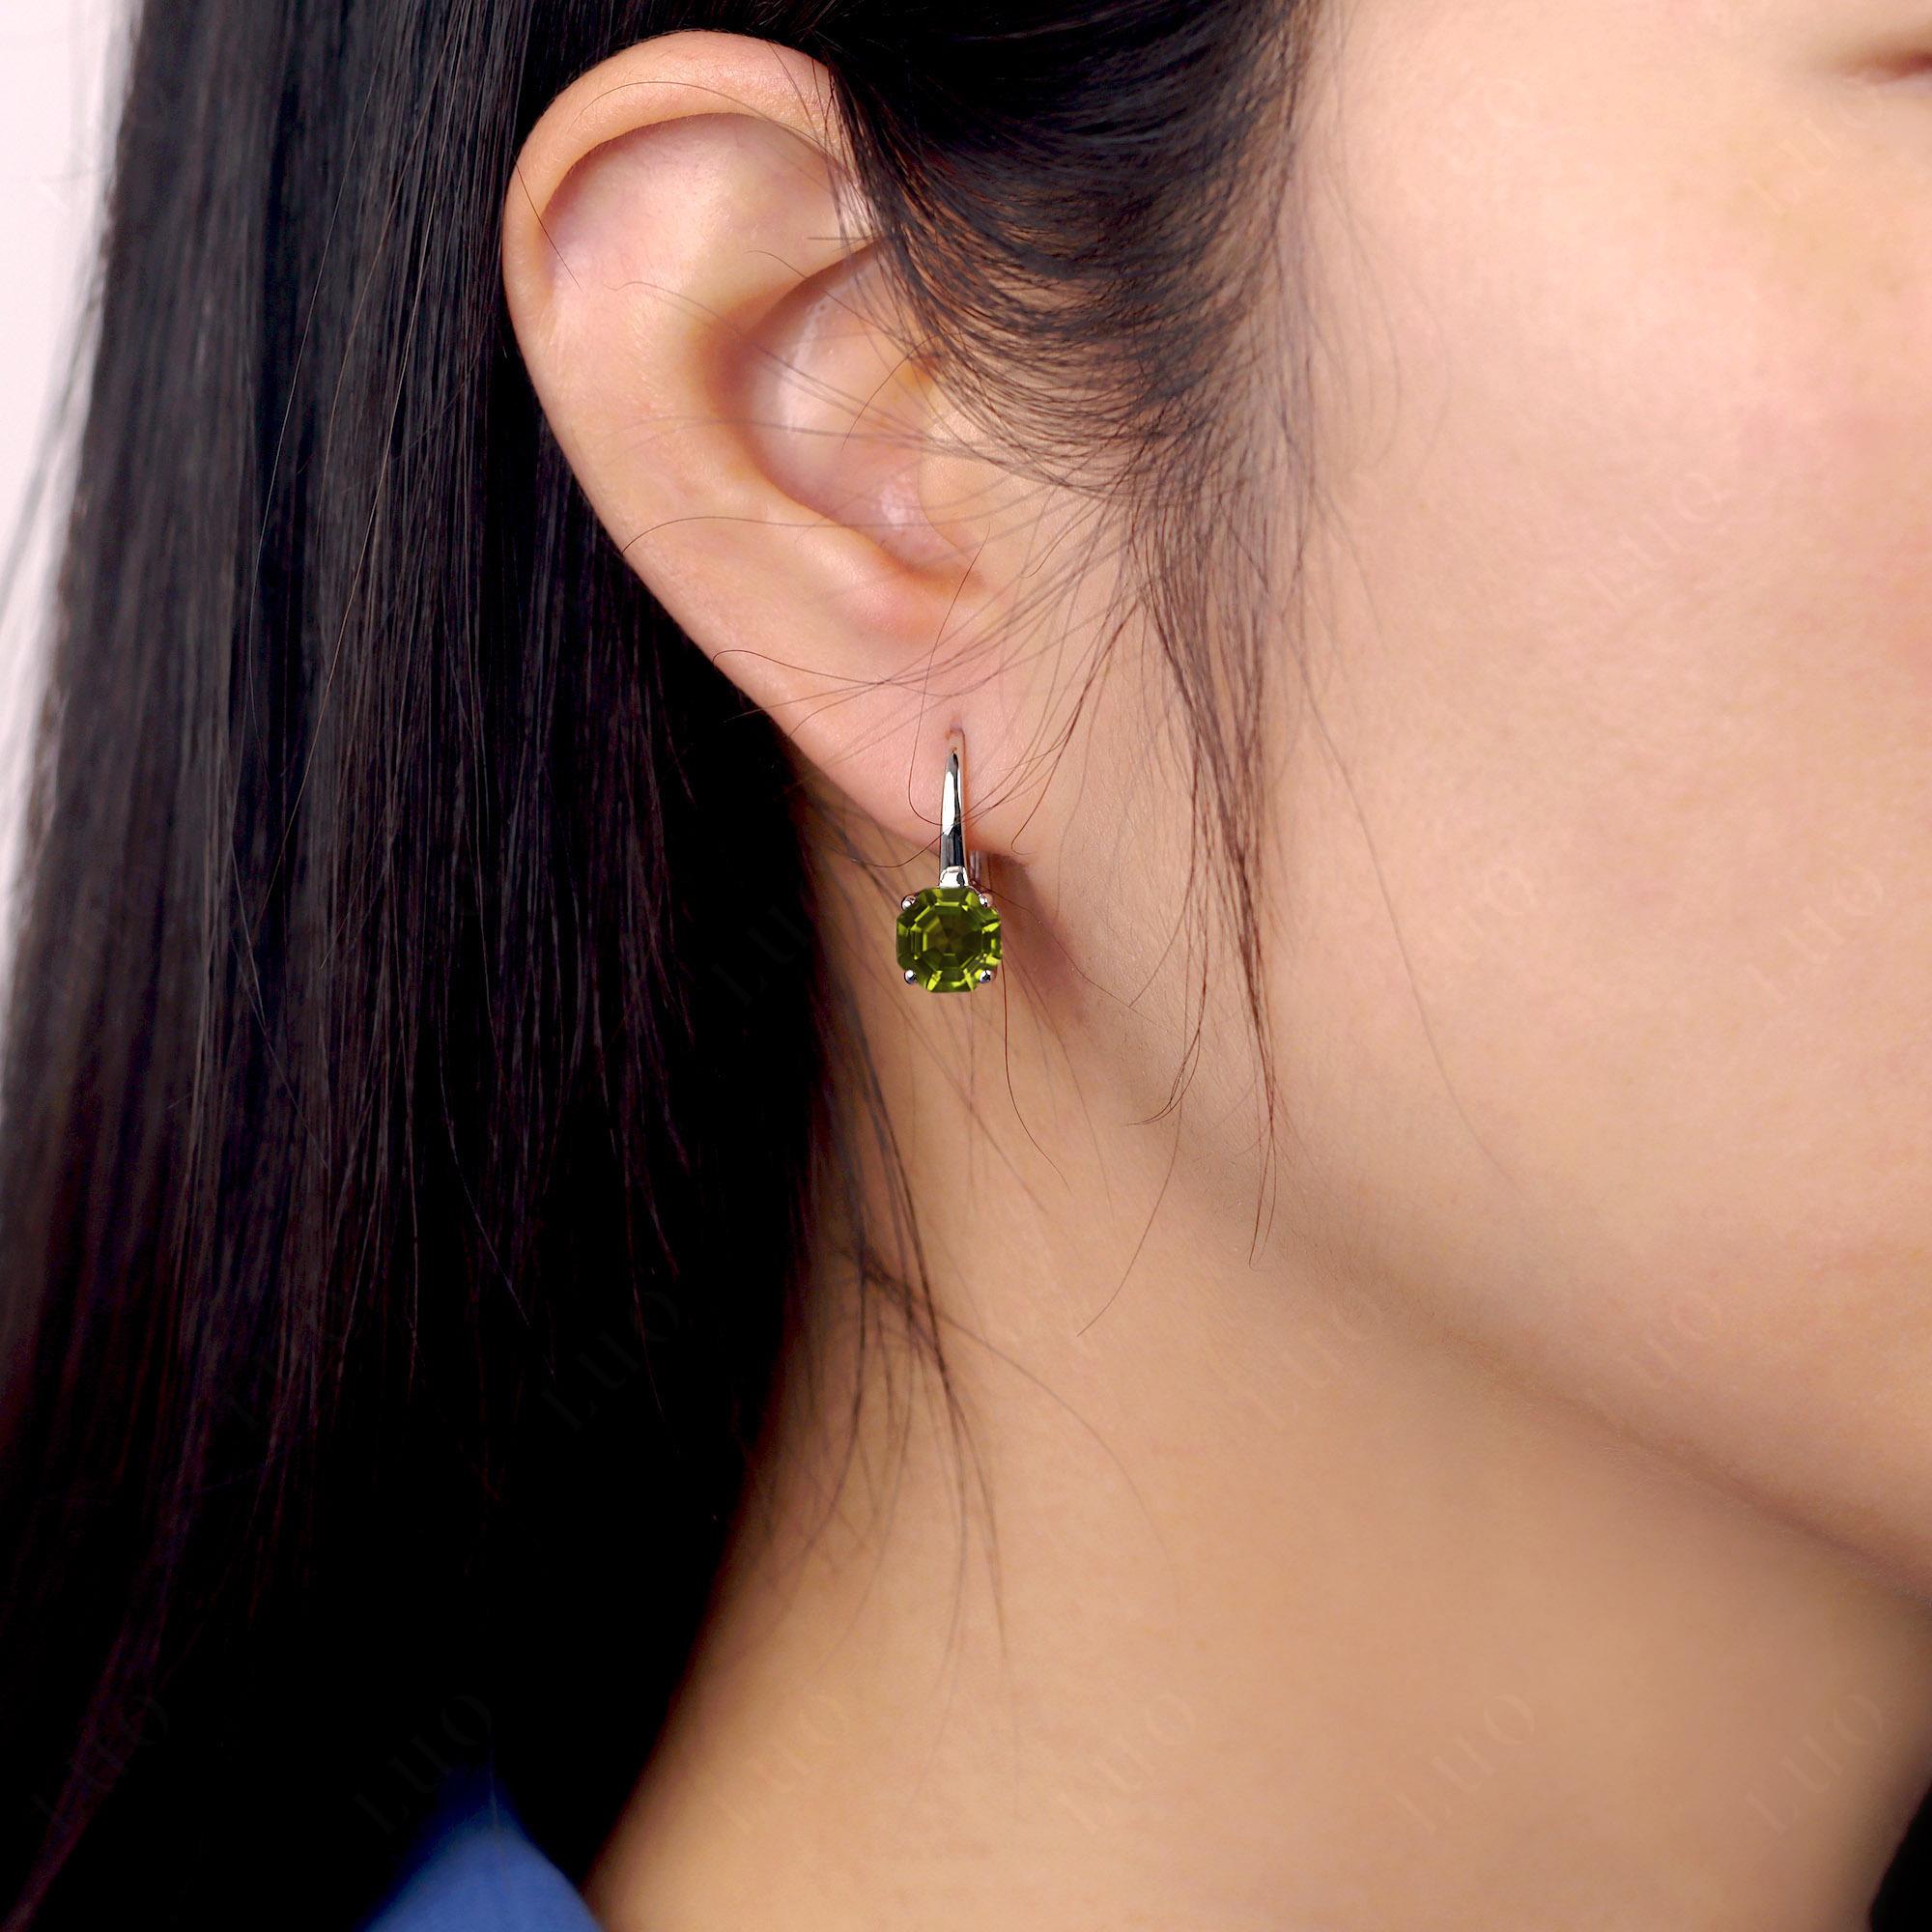 Octagon Cut Peridot Leverback Earrings - LUO Jewelry